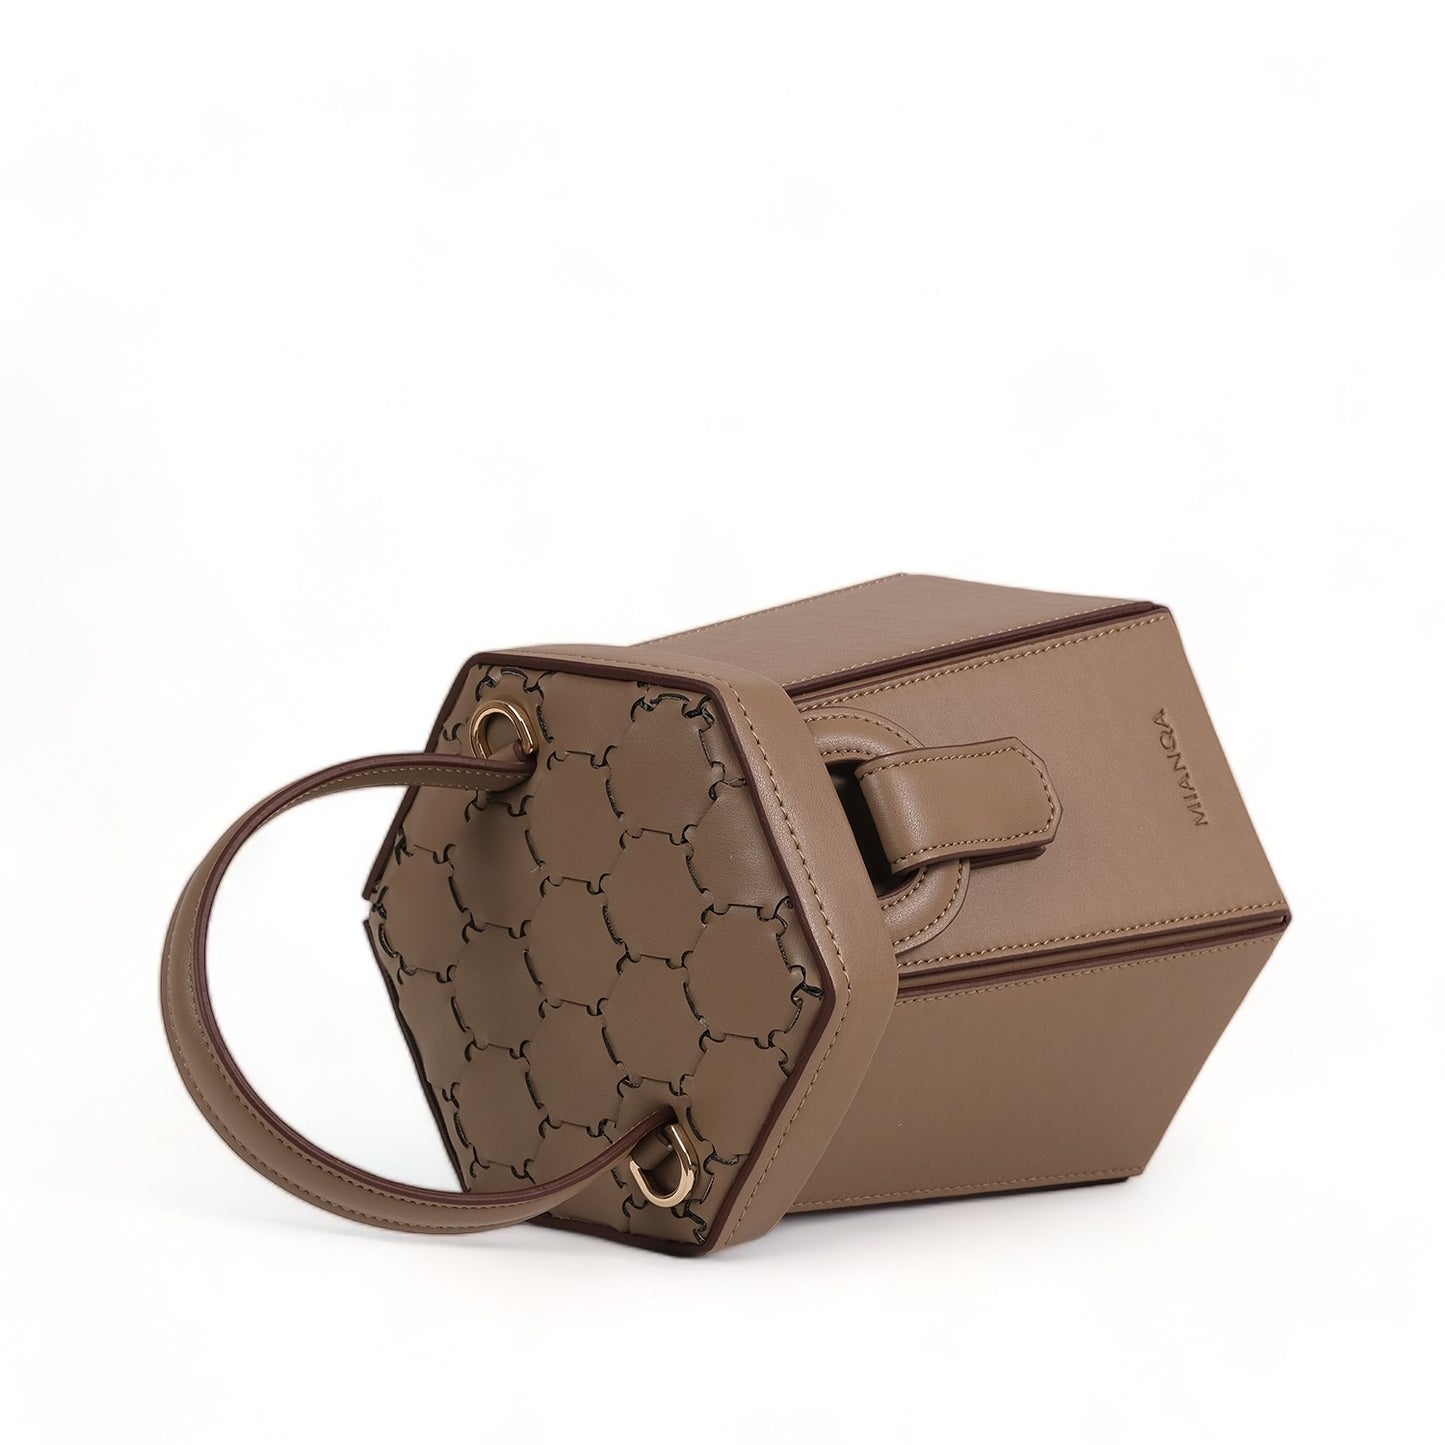 ELIF Olive Leather Leather Hexagon Bag Mink